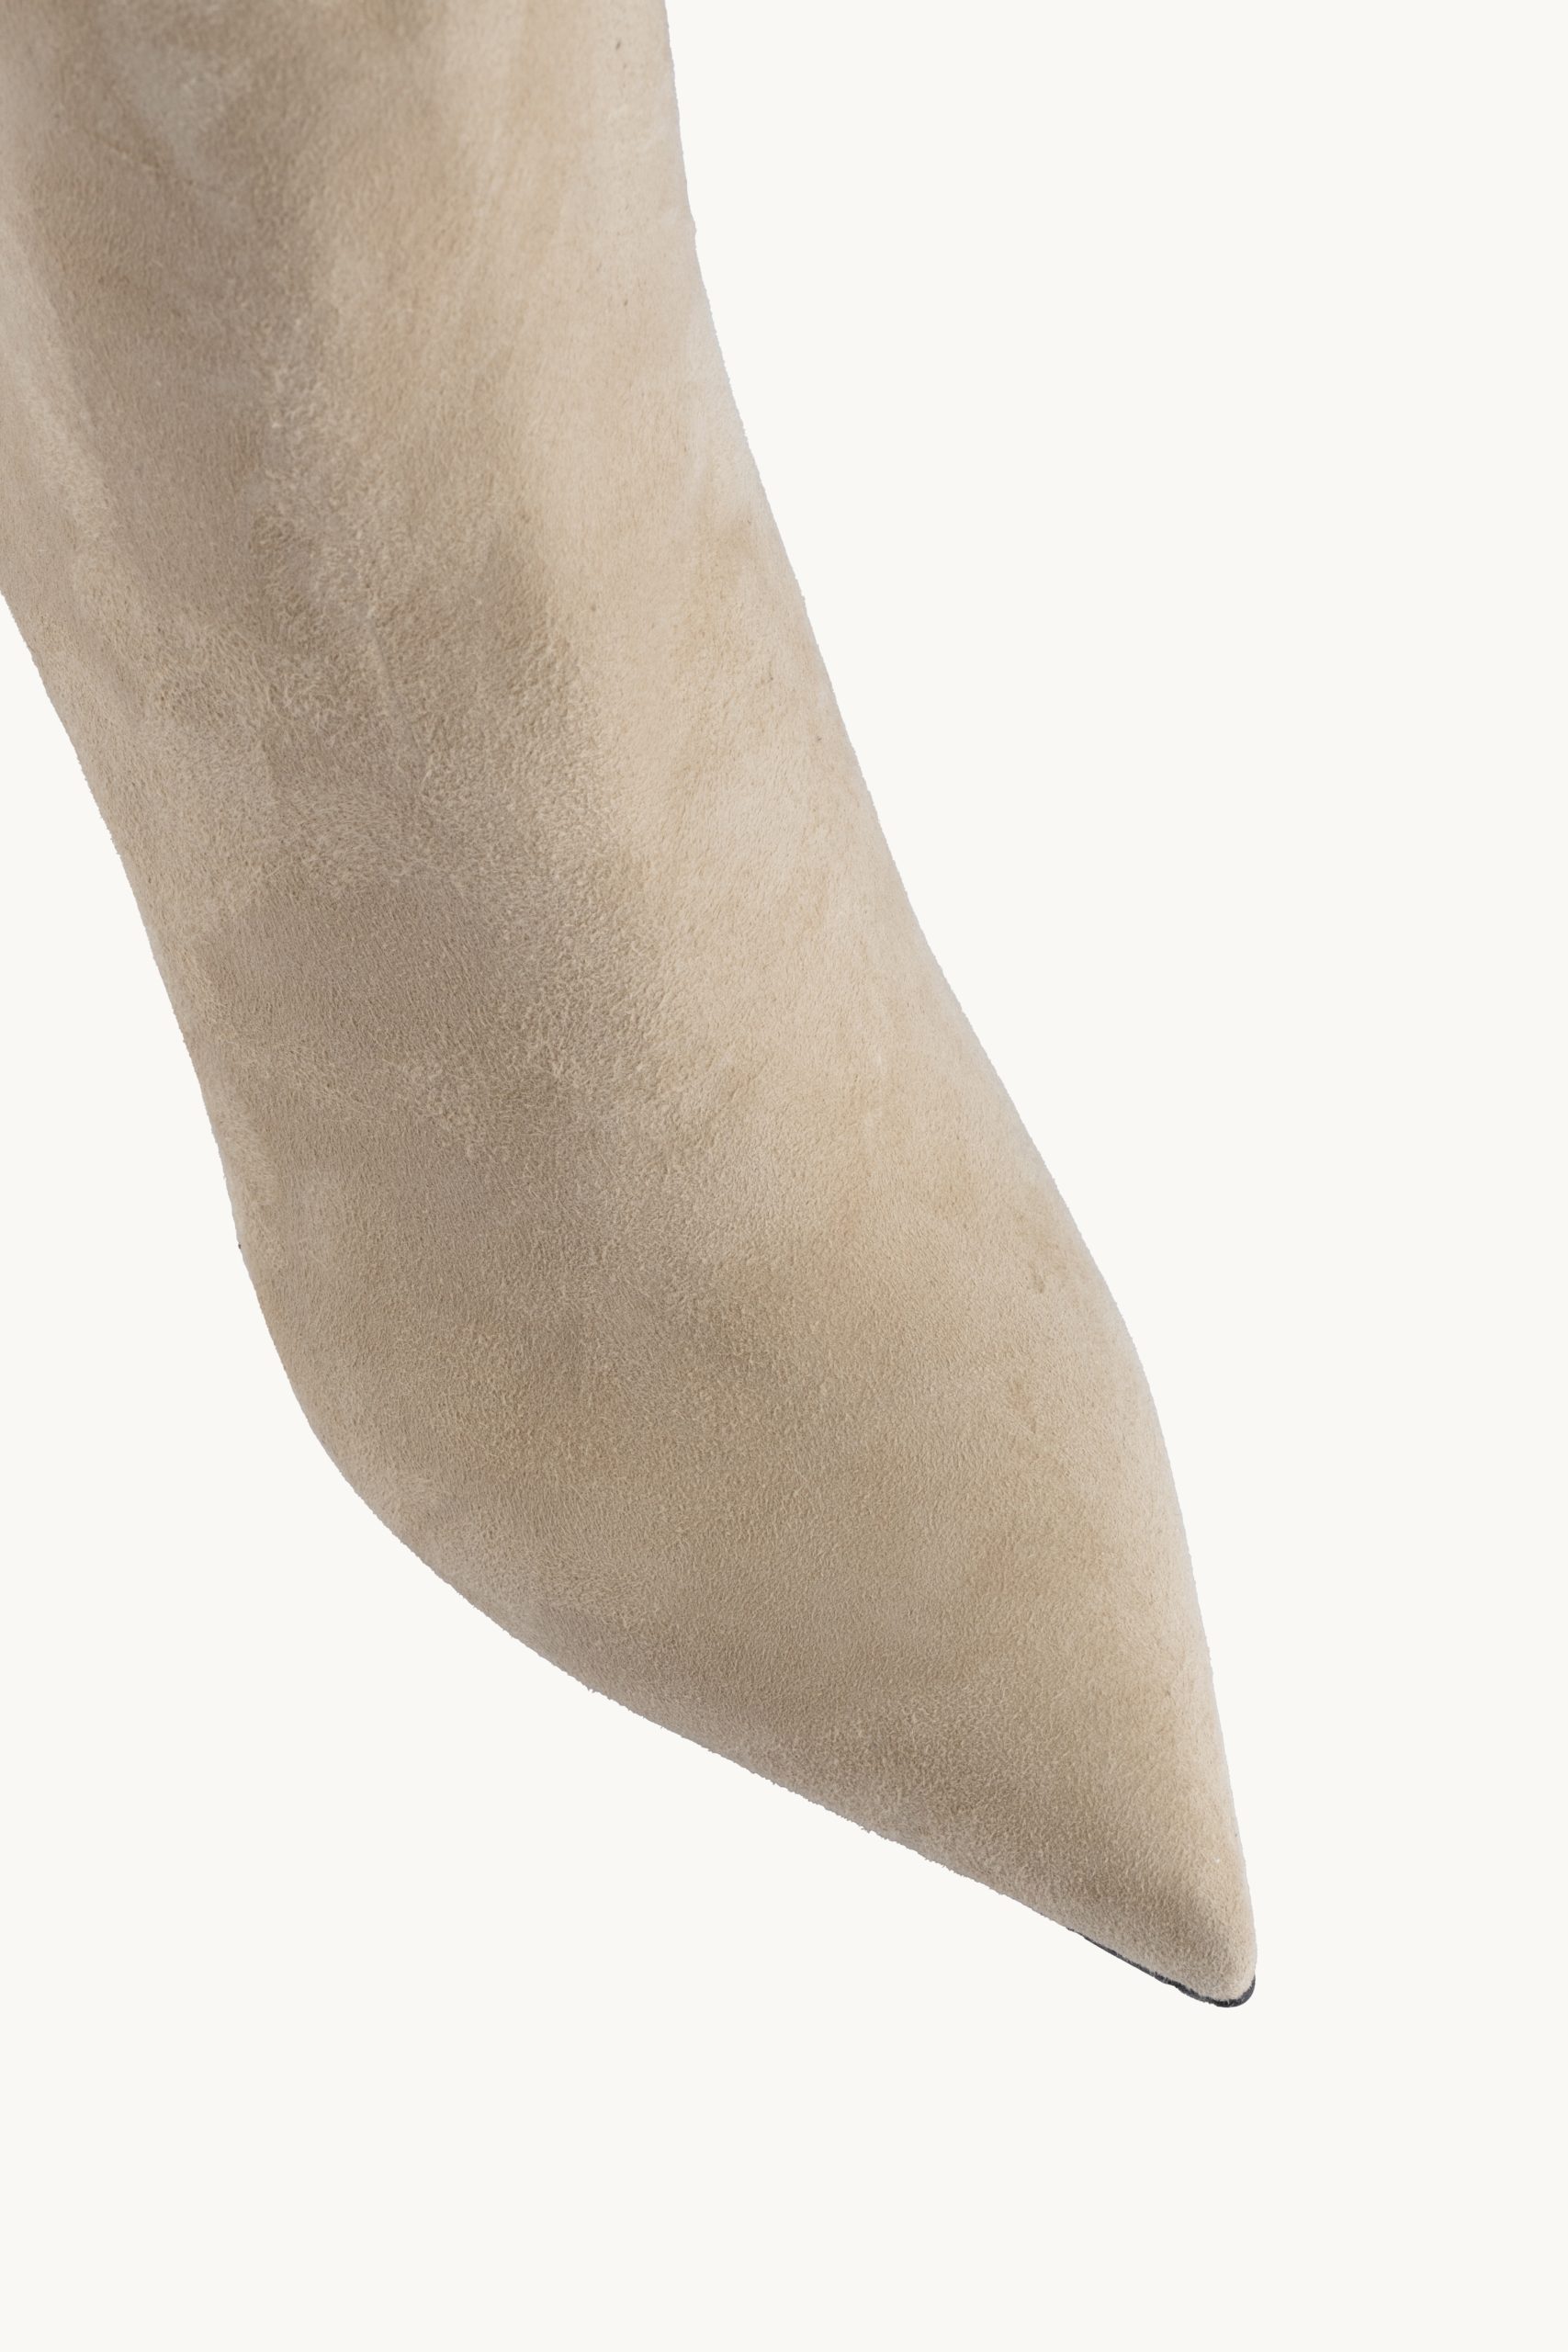 Kratke čižme - Soft Mystique su prefinjene kratke bež čizme od brušene kože sa tankom štiklom.